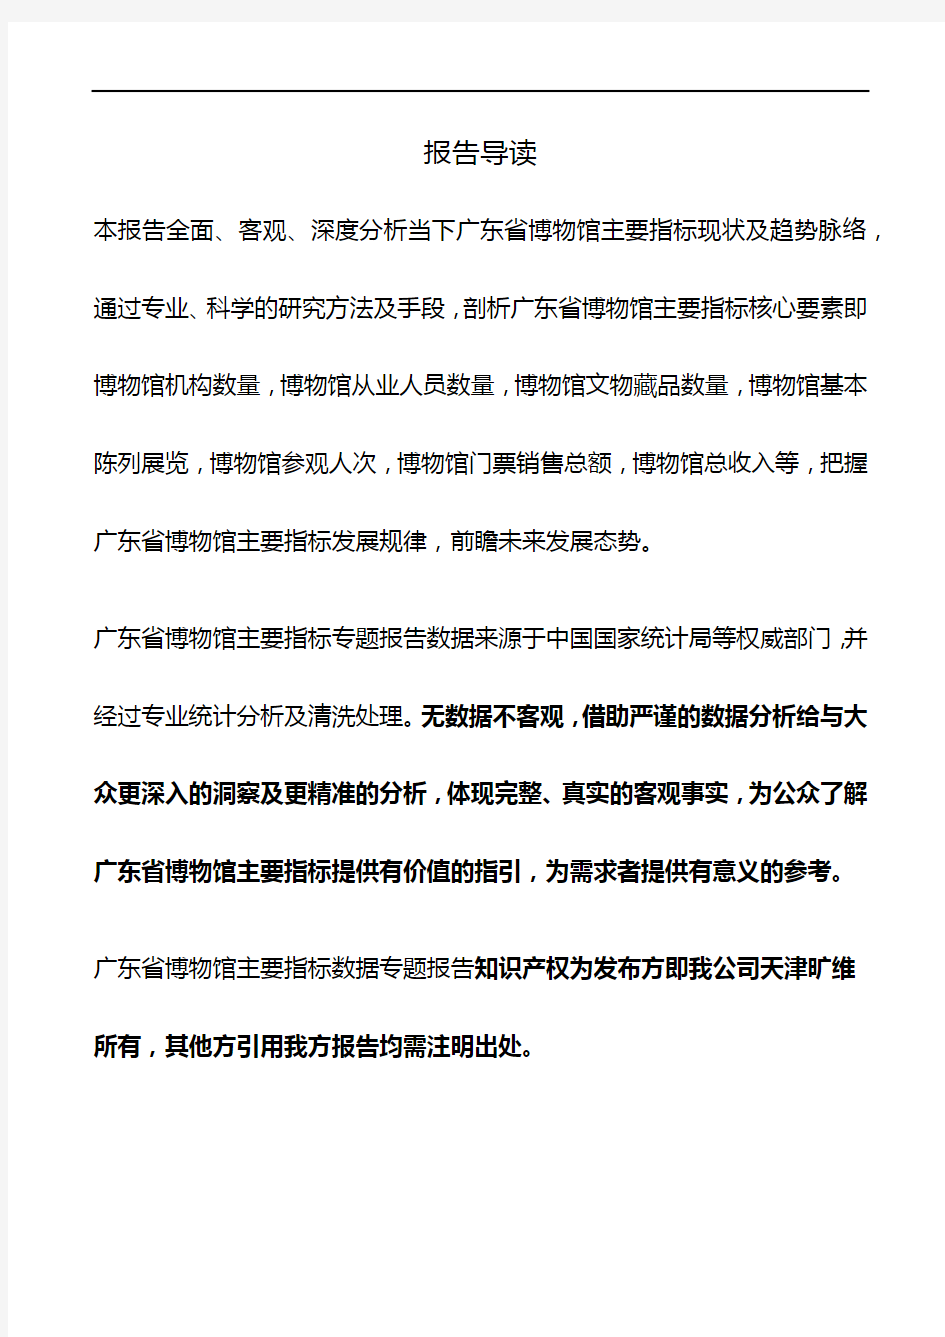 广东省博物馆主要指标3年数据专题报告2019版